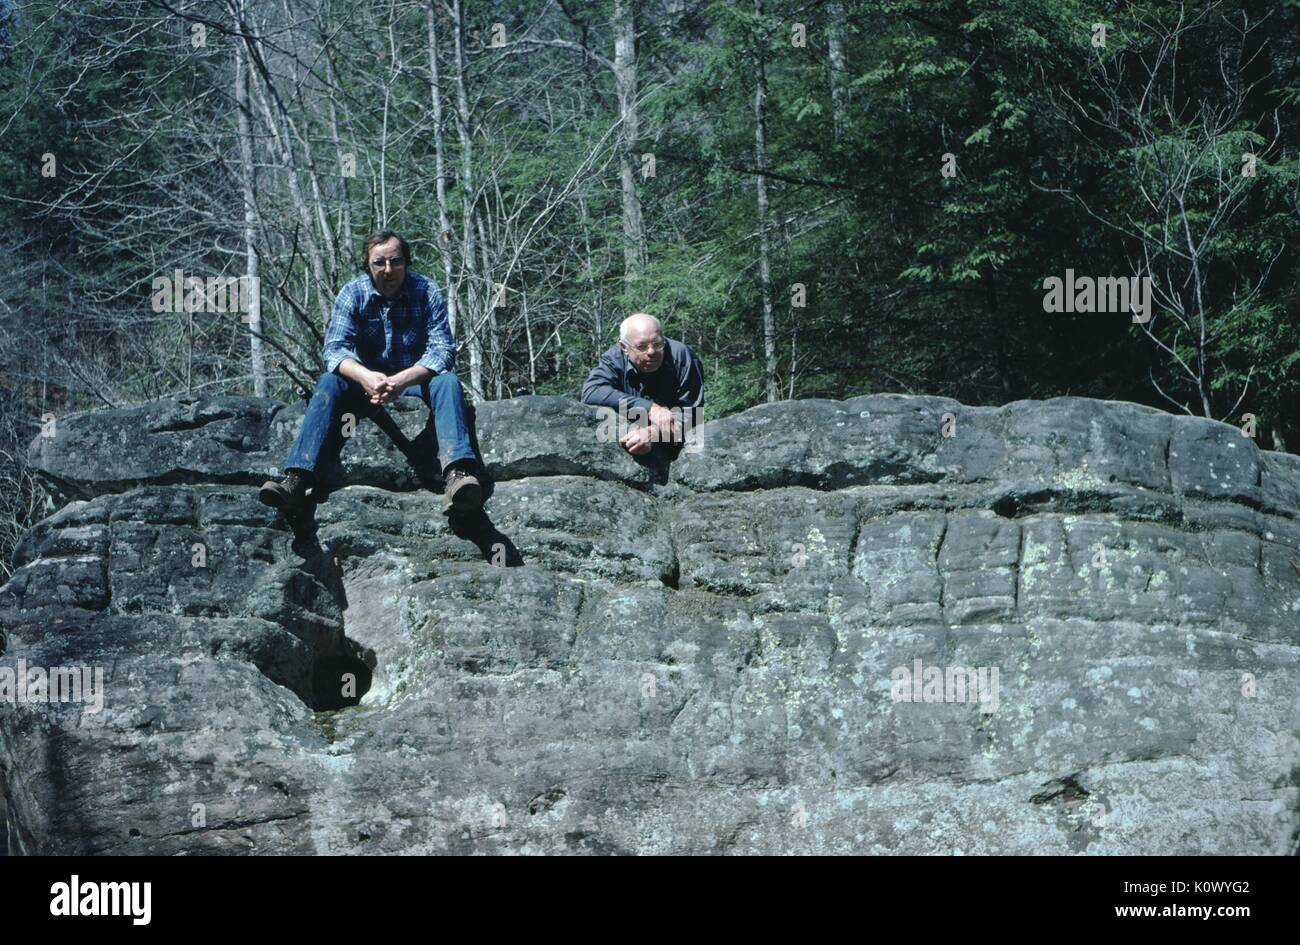 Deux hommes dans les bois, sur le bord d'un affleurement rocheux, un homme assis sur les rochers, les jambes suspendues sur le bord et ses mains croisées, l'autre penché sur les rochers, du grain rôti Creek, Kentucky, 1975. Crédit photo Smith Collection/Gado/Getty Images. Banque D'Images